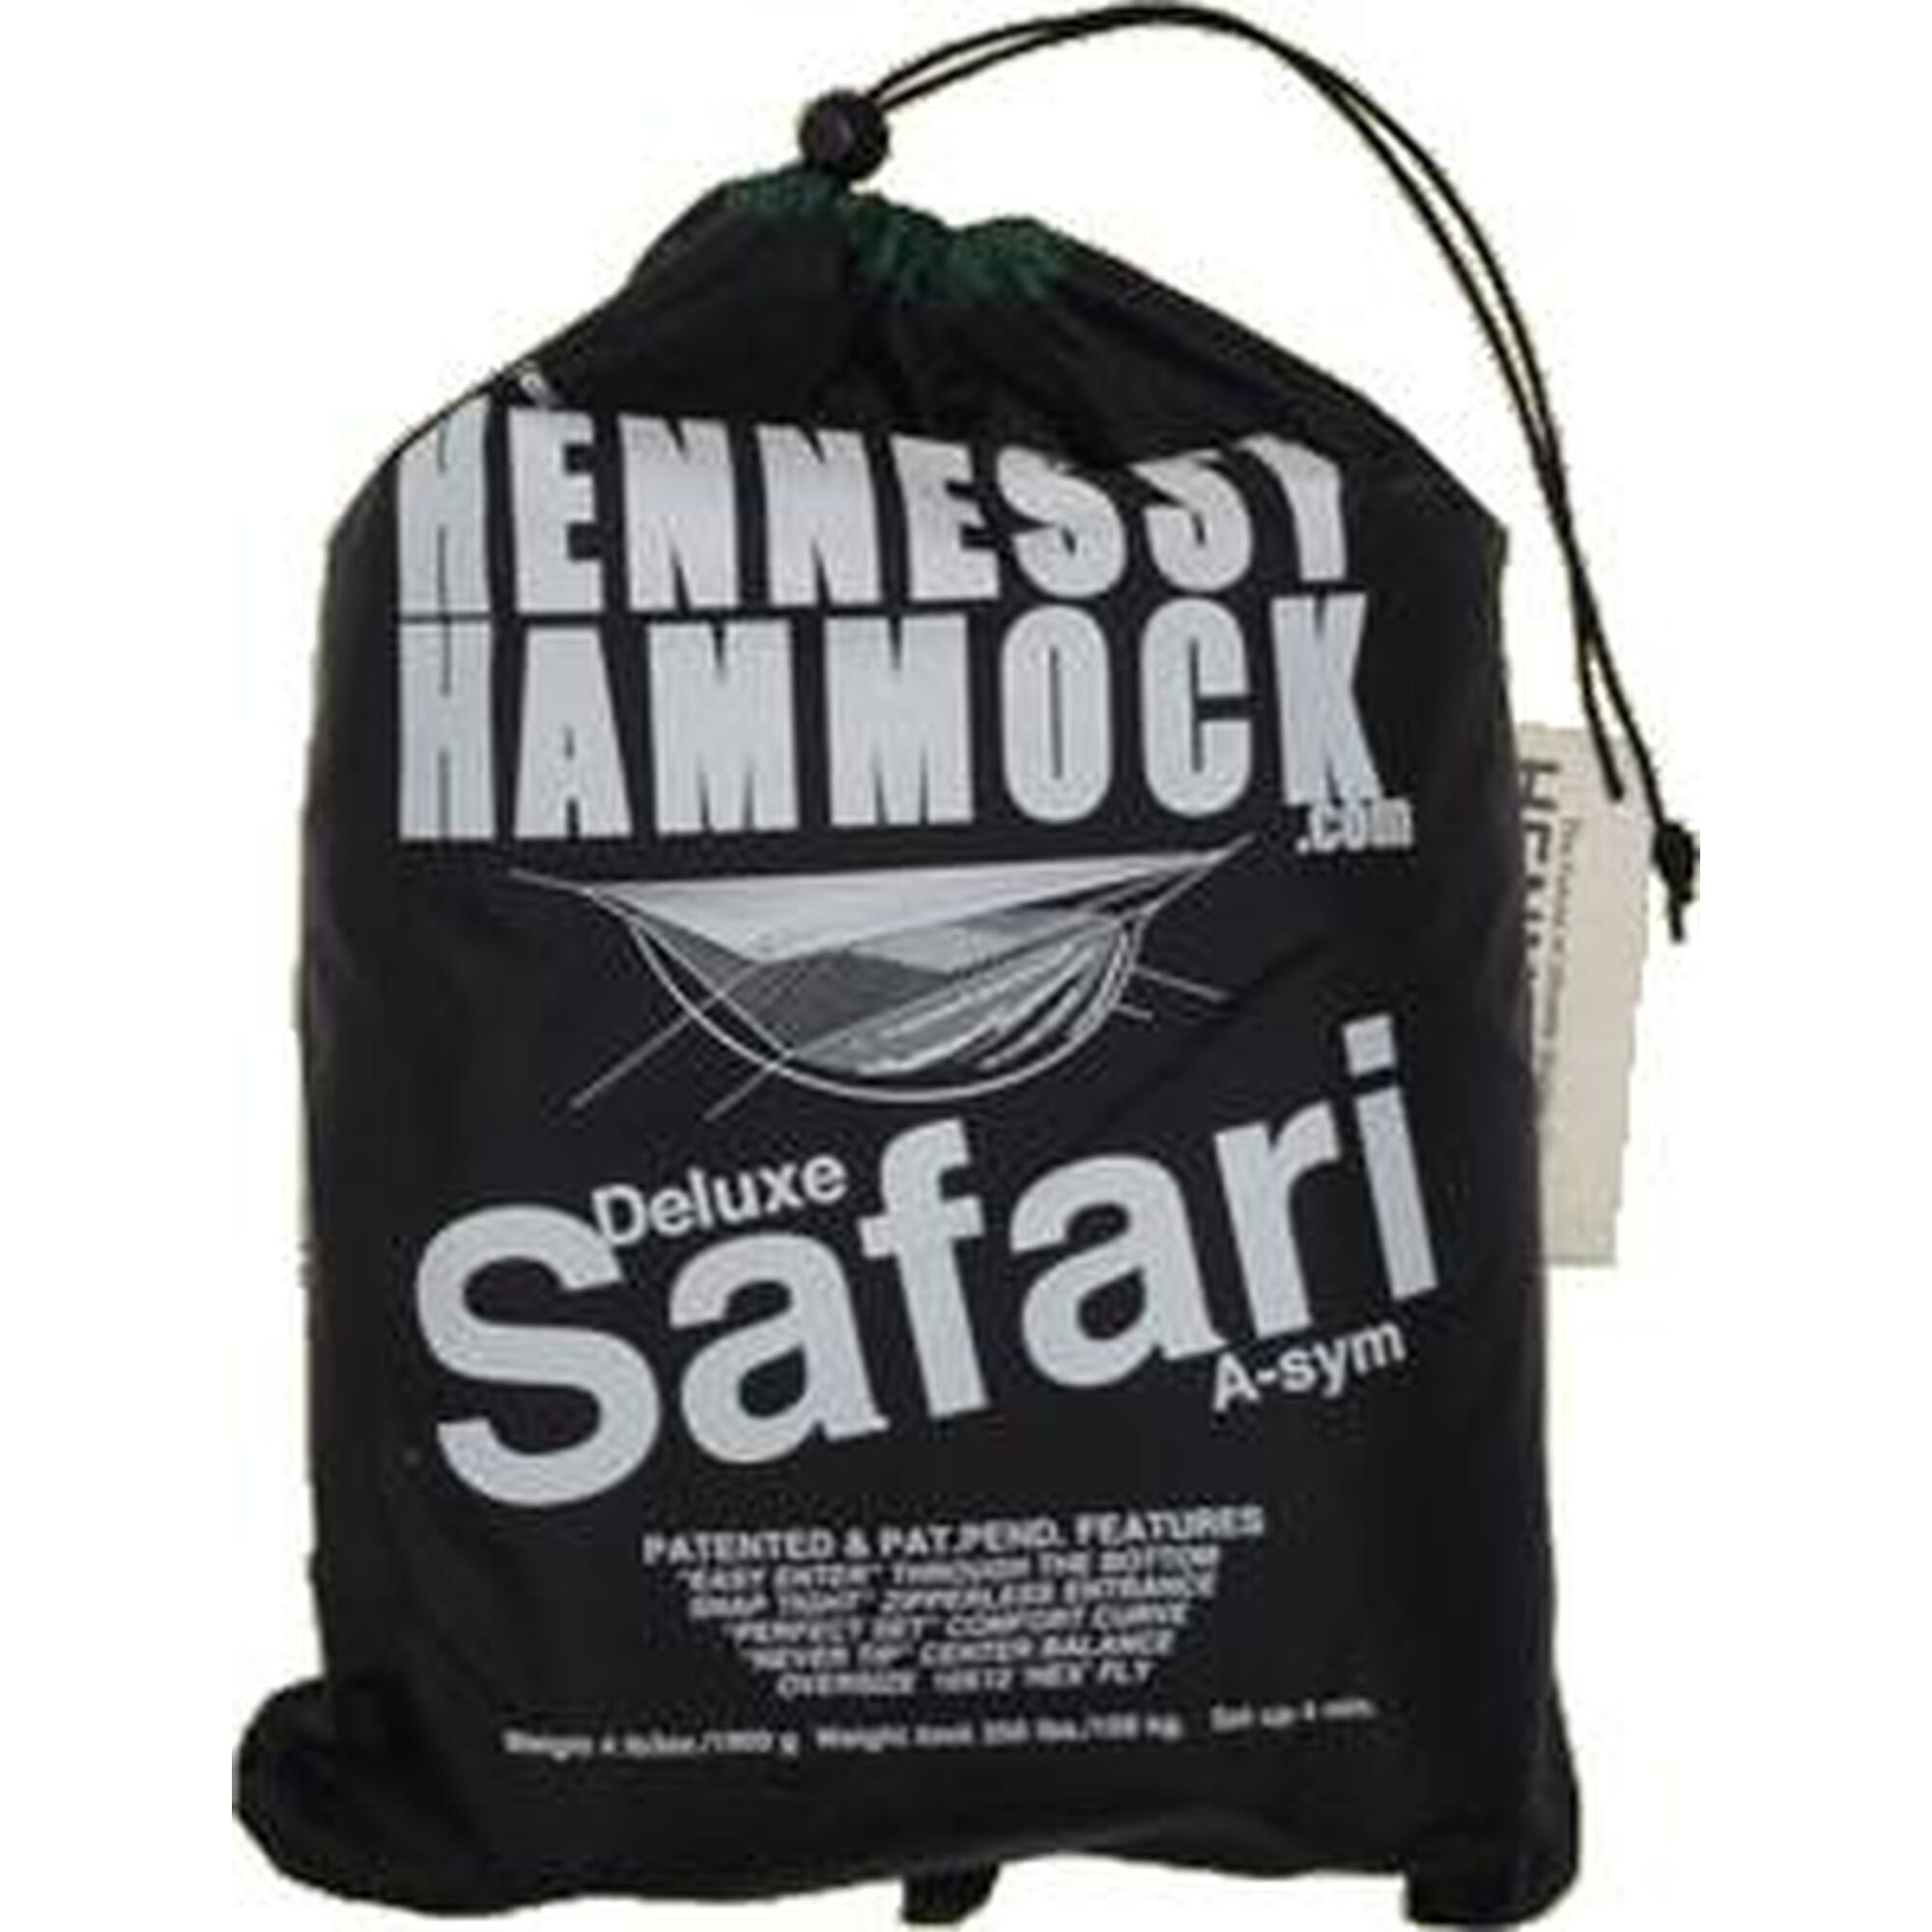 Hennessy Hammock Safari Deluxe Classique